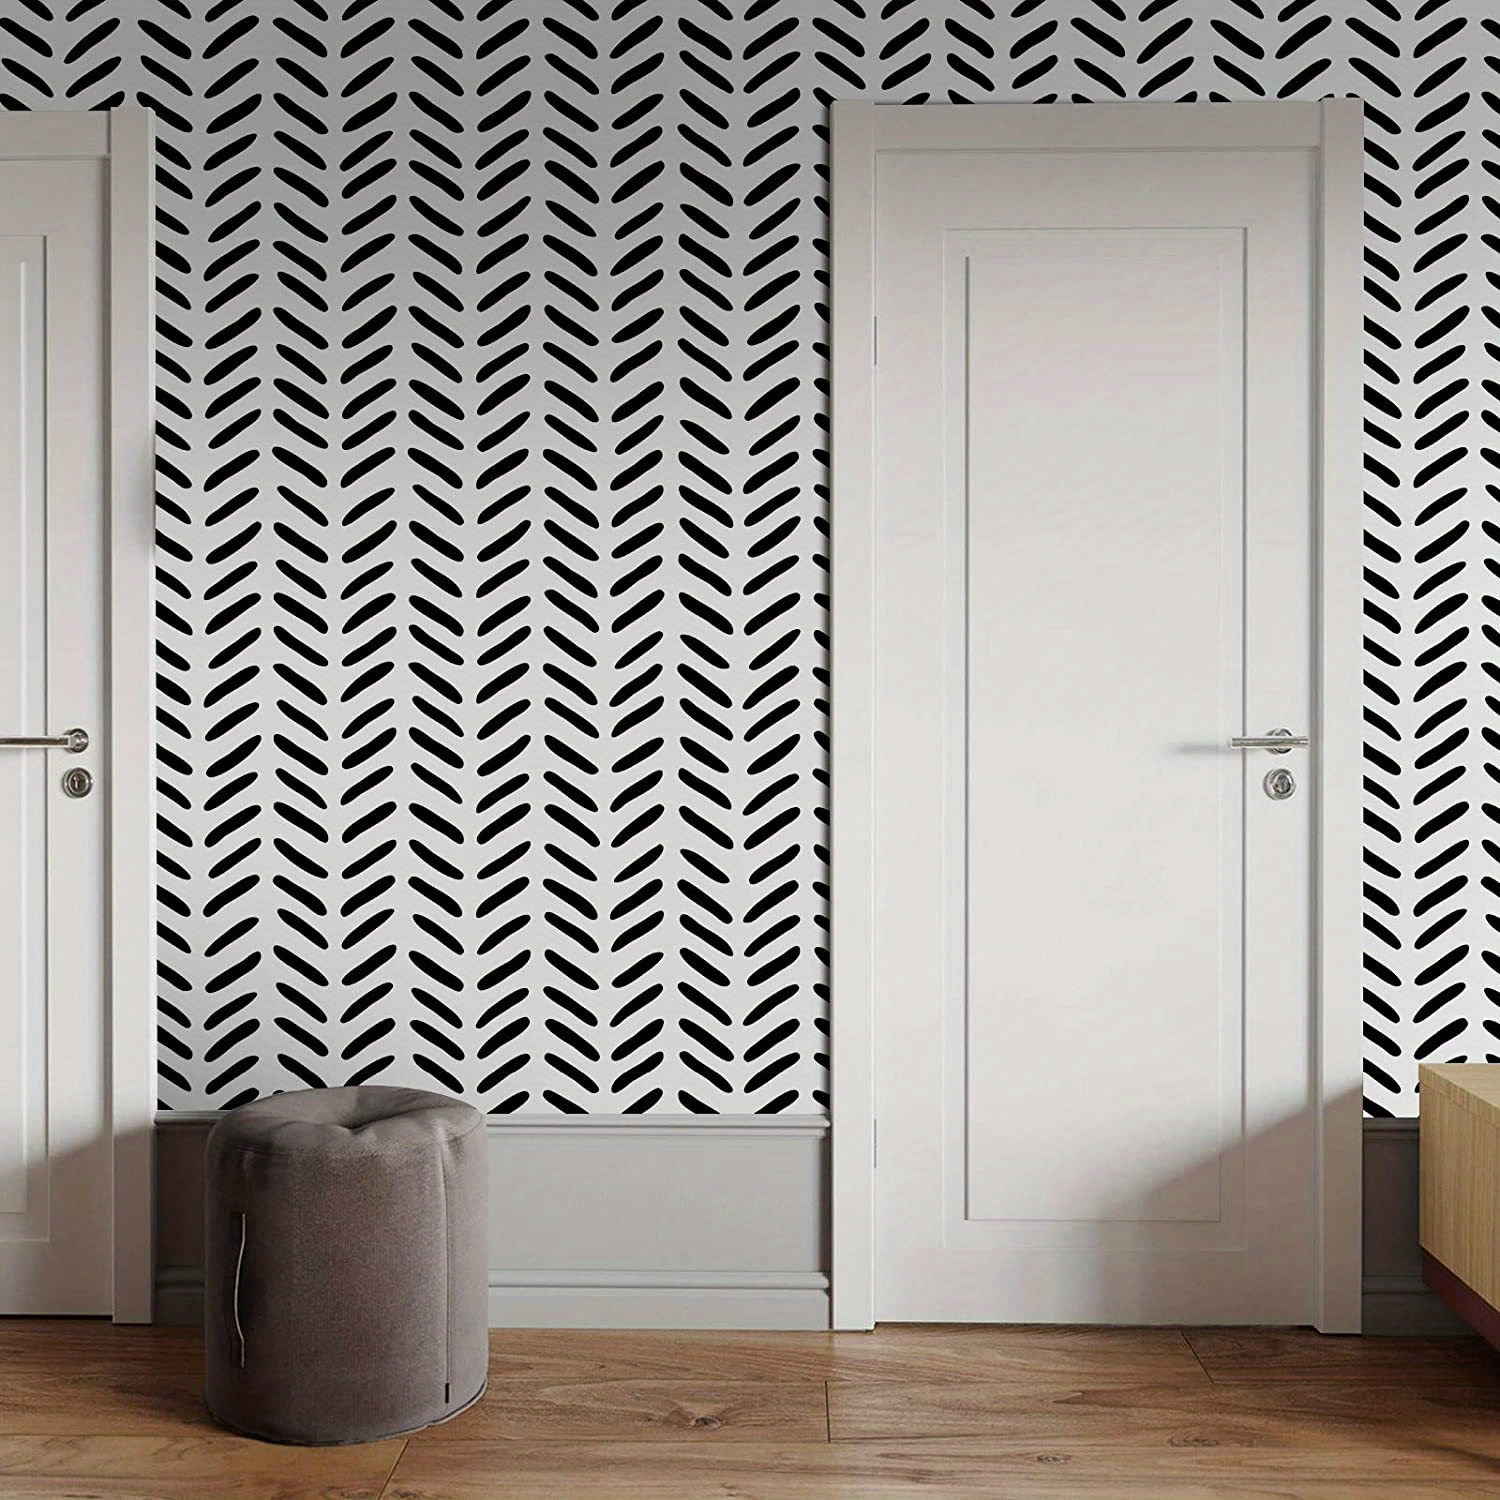 Papel tapiz autoadhesivo de vinilo blanco y negro a rayas para despegar y  pegar, papel tapiz para paredes, muebles, gabinetes, dormitorio, cocina